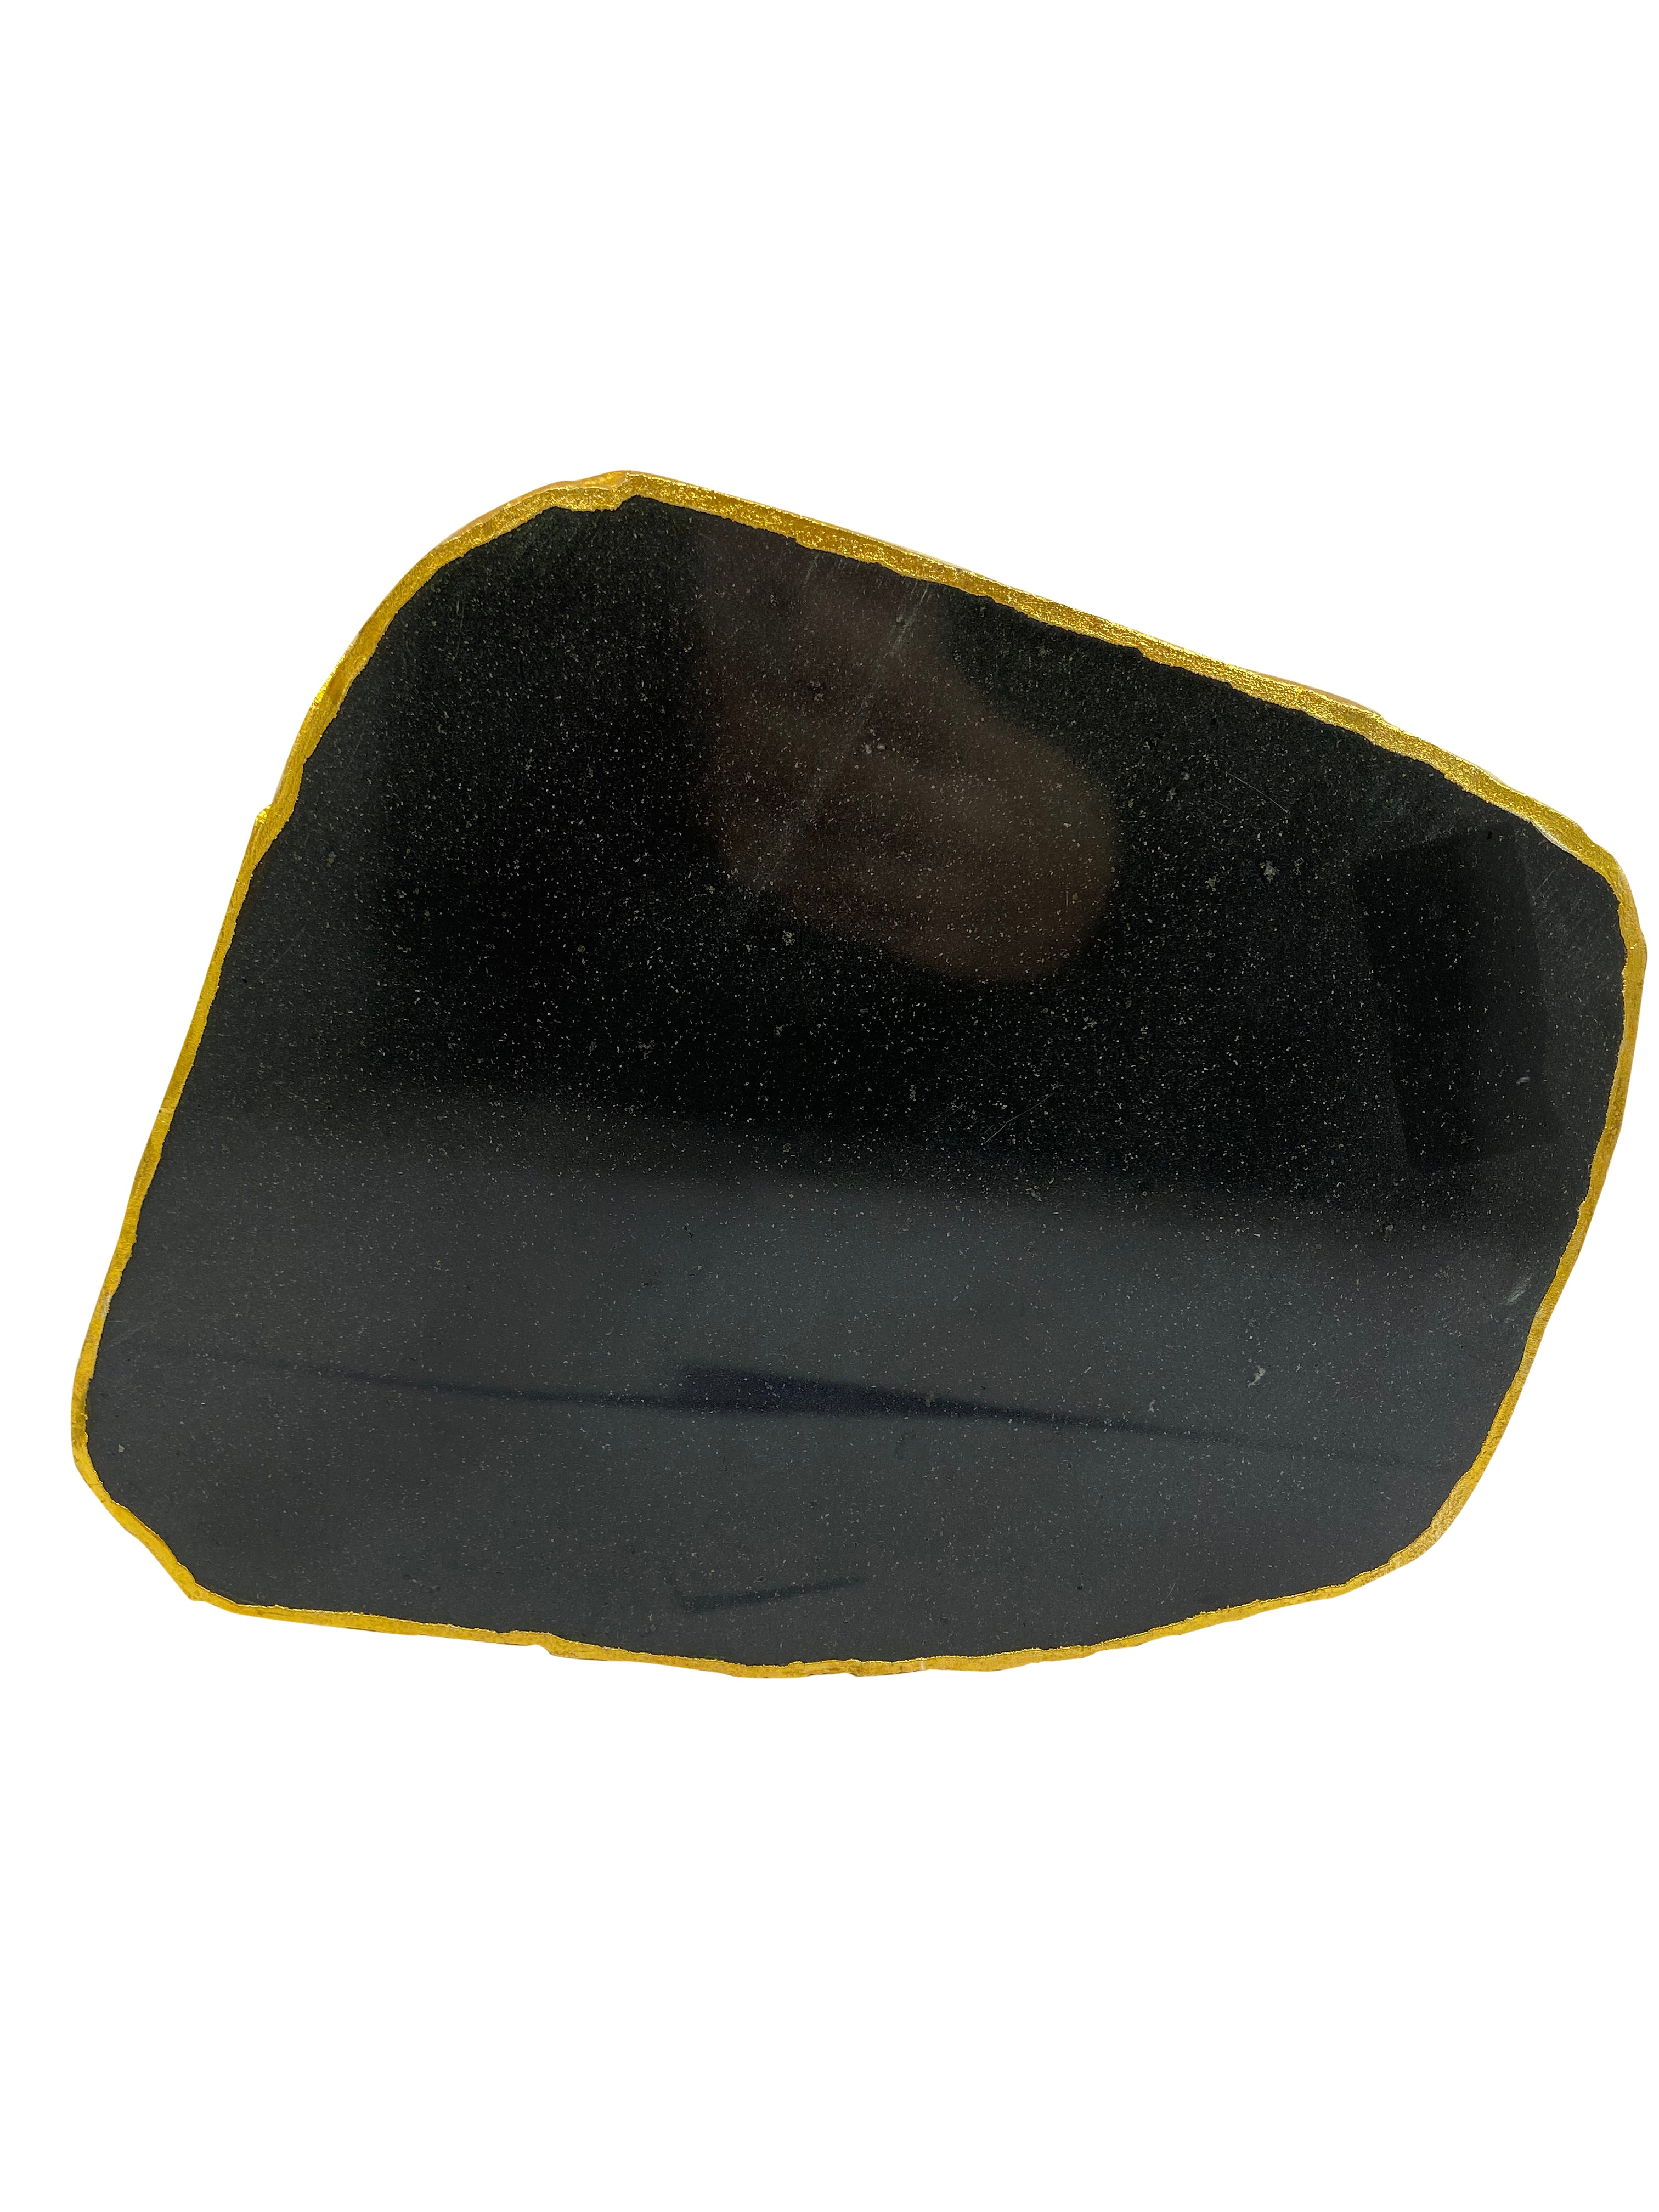 Black Agate Crystal Plater C - 1.8KG